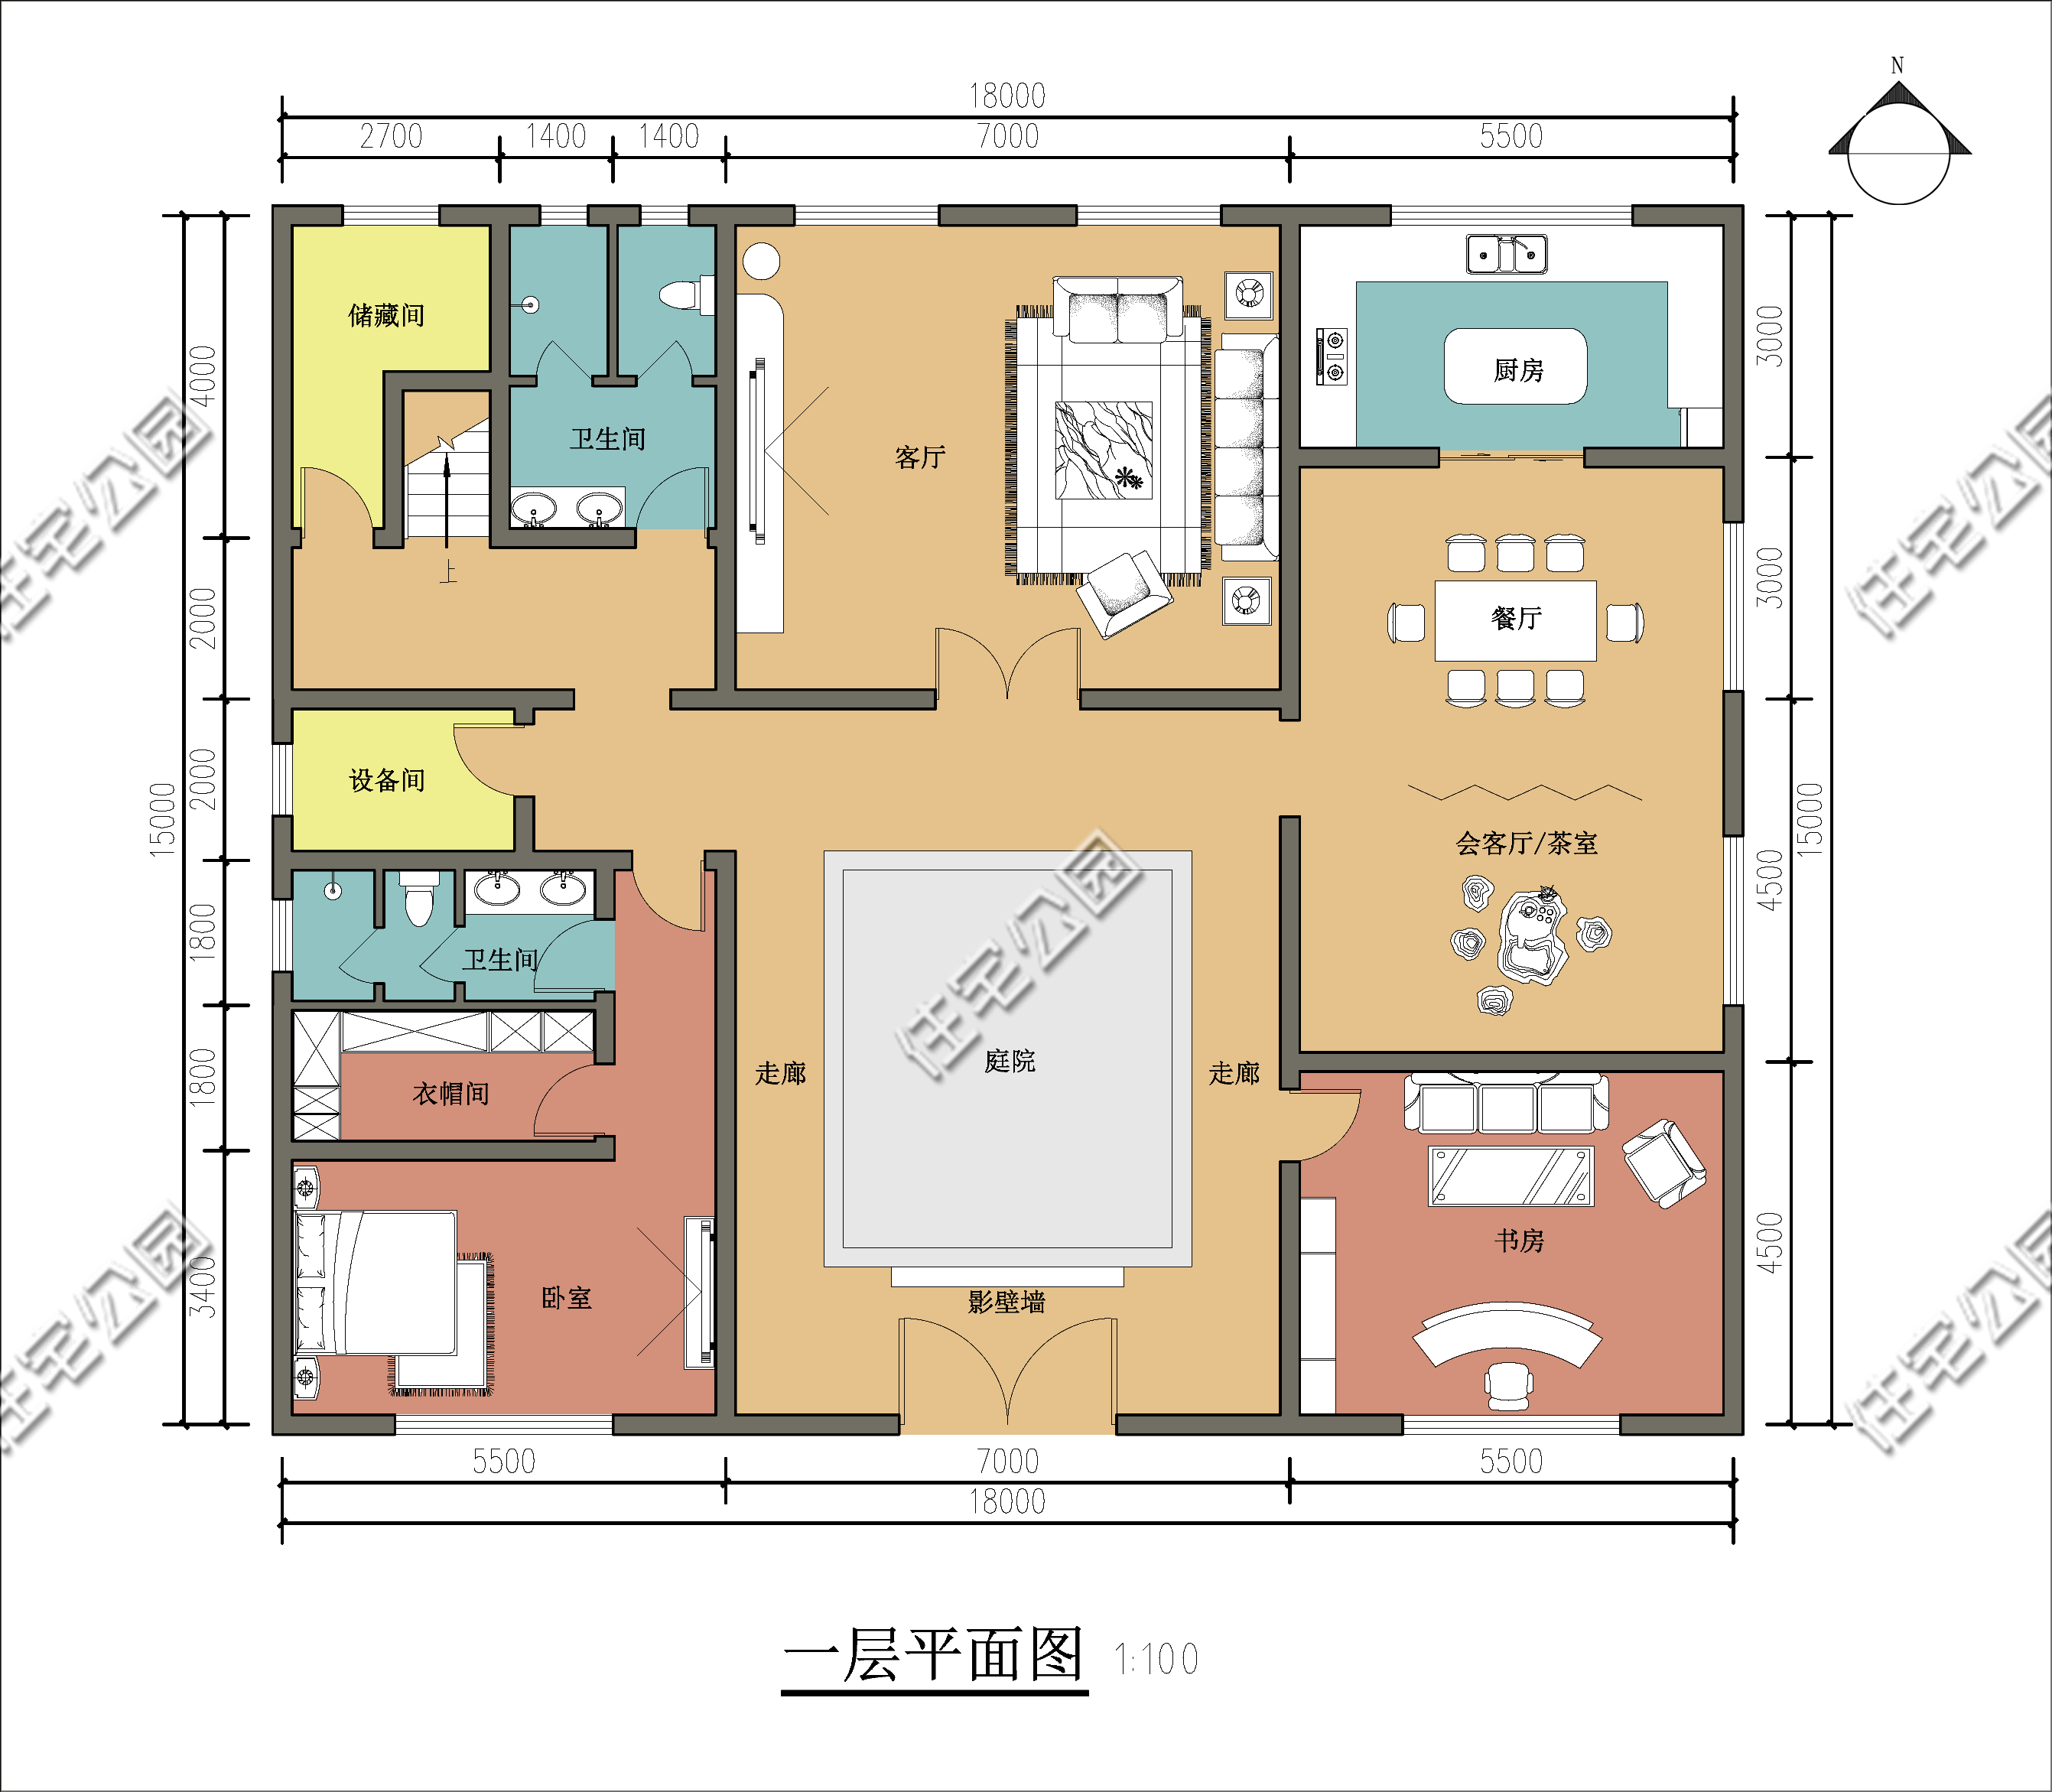 6卧室，11X12米二层经典欧式别墅丨建筑师作品展-搜狐